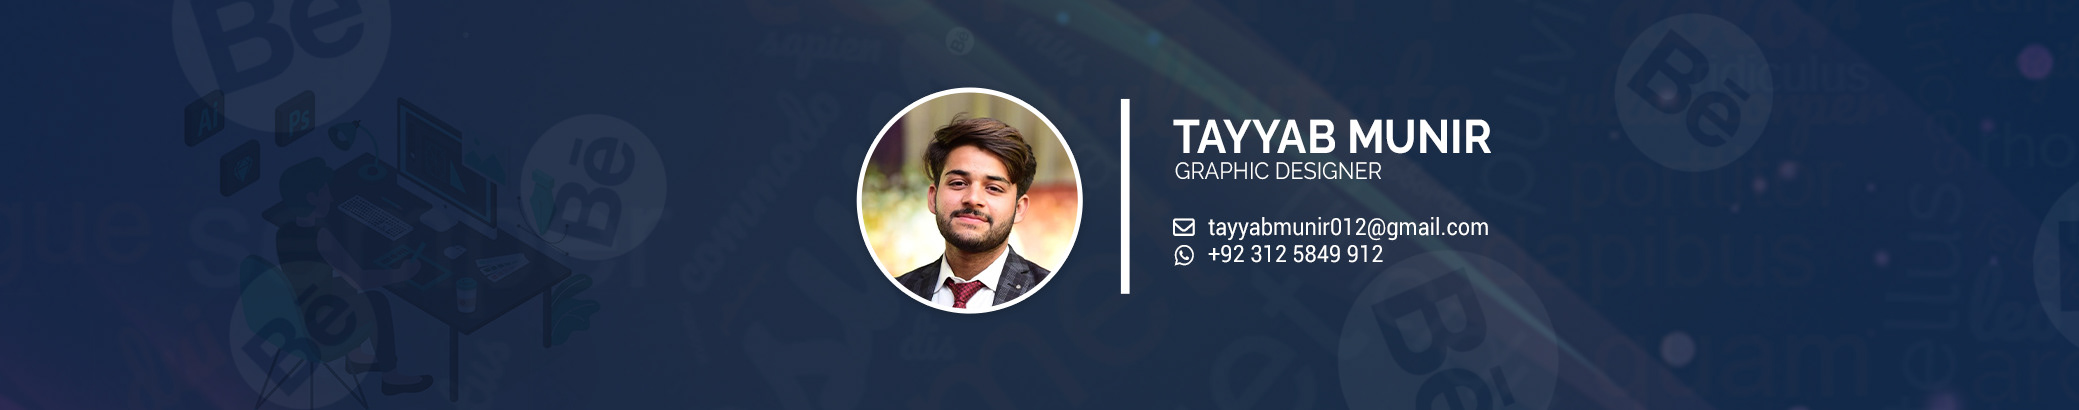 Tayyab Munir's profile banner